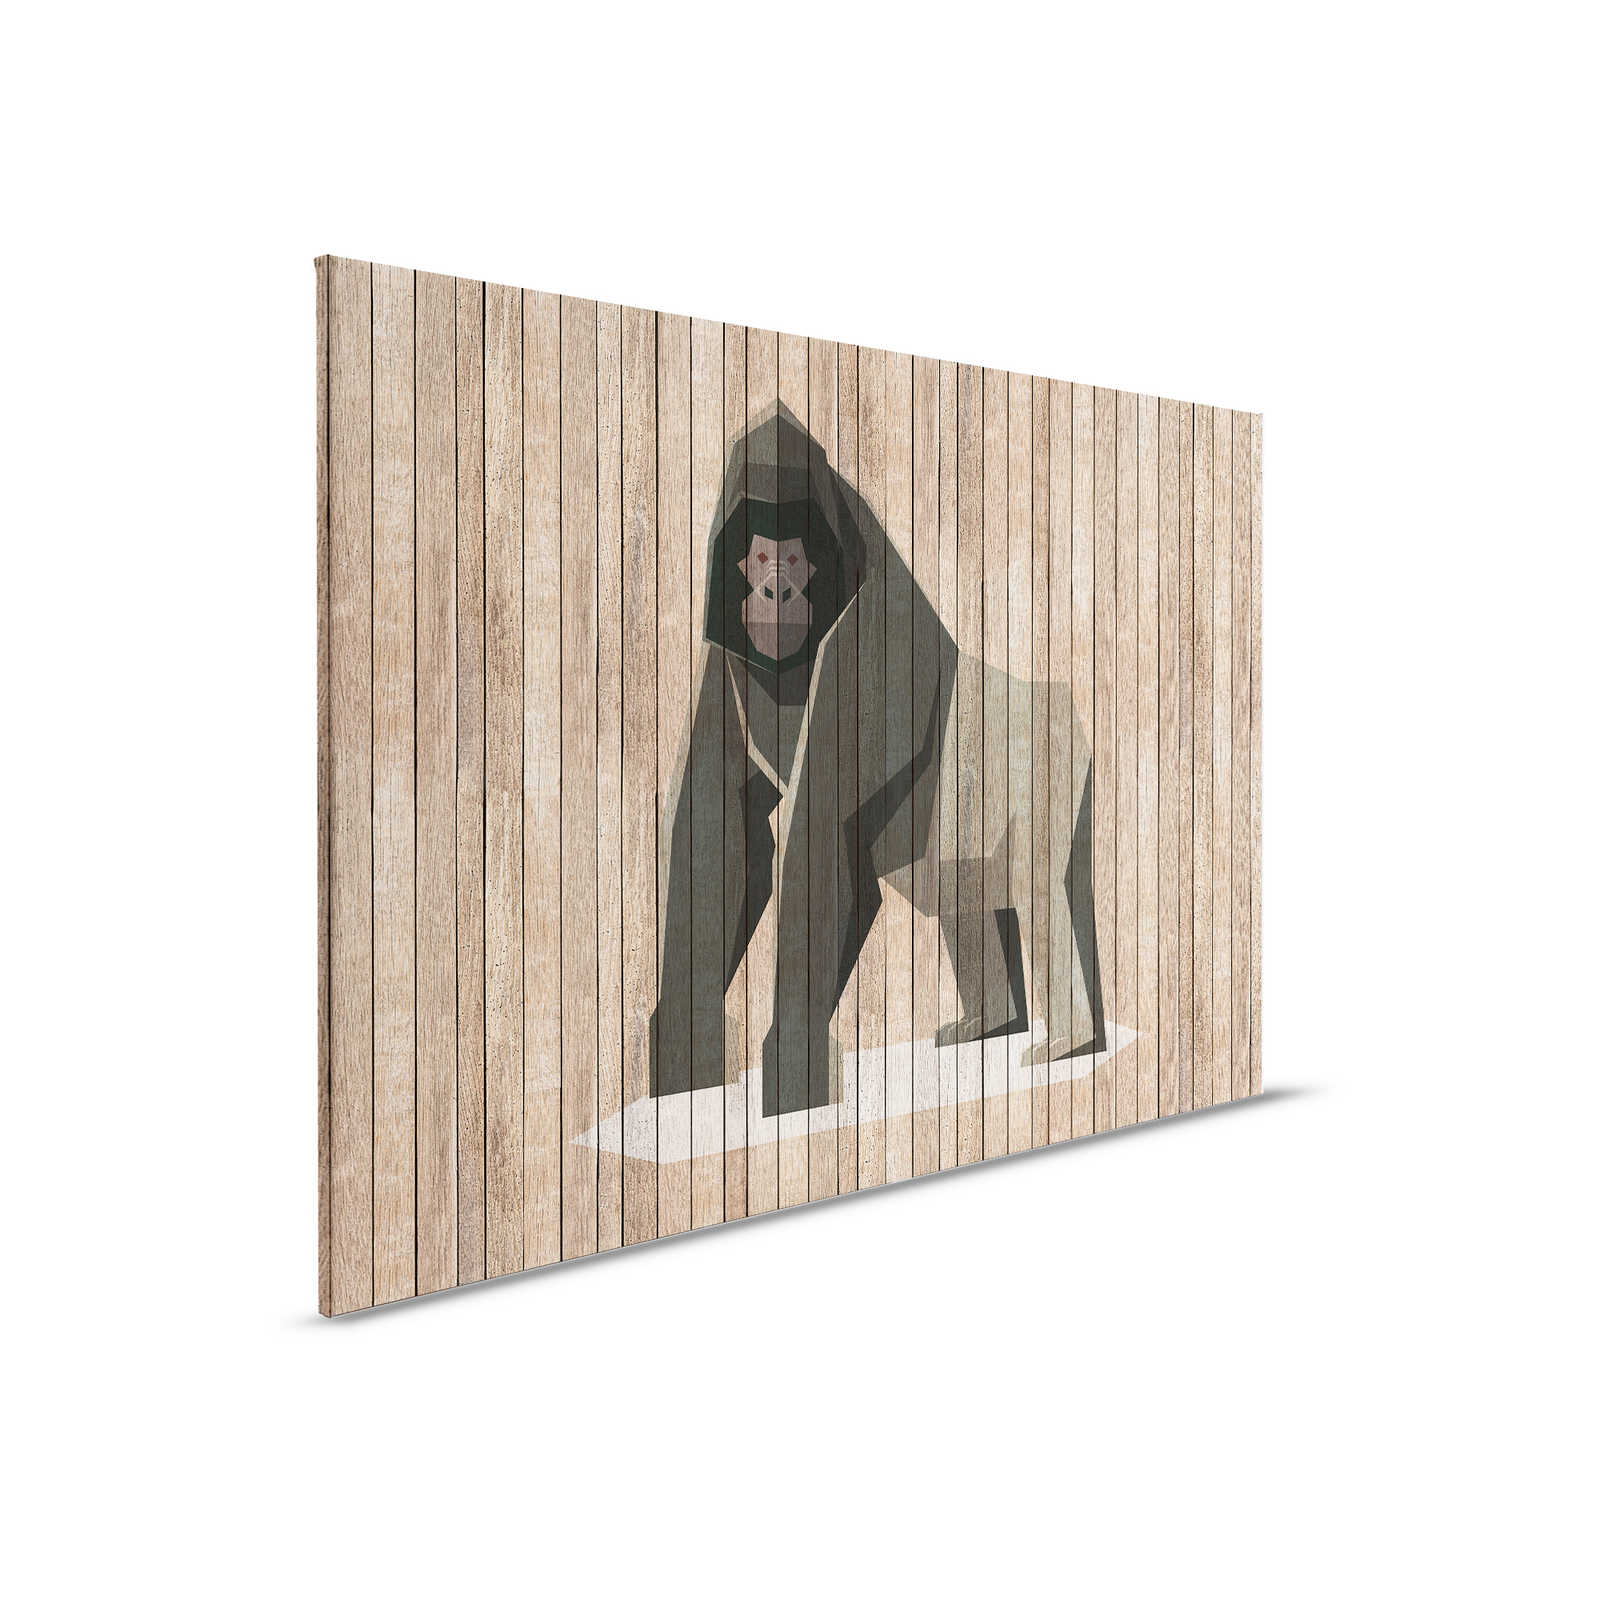 Born to Be Wild 3 - Leinwandbild Gorilla auf Bretterwand - Holzpaneele Breit – 0,90 m x 0,60 m
